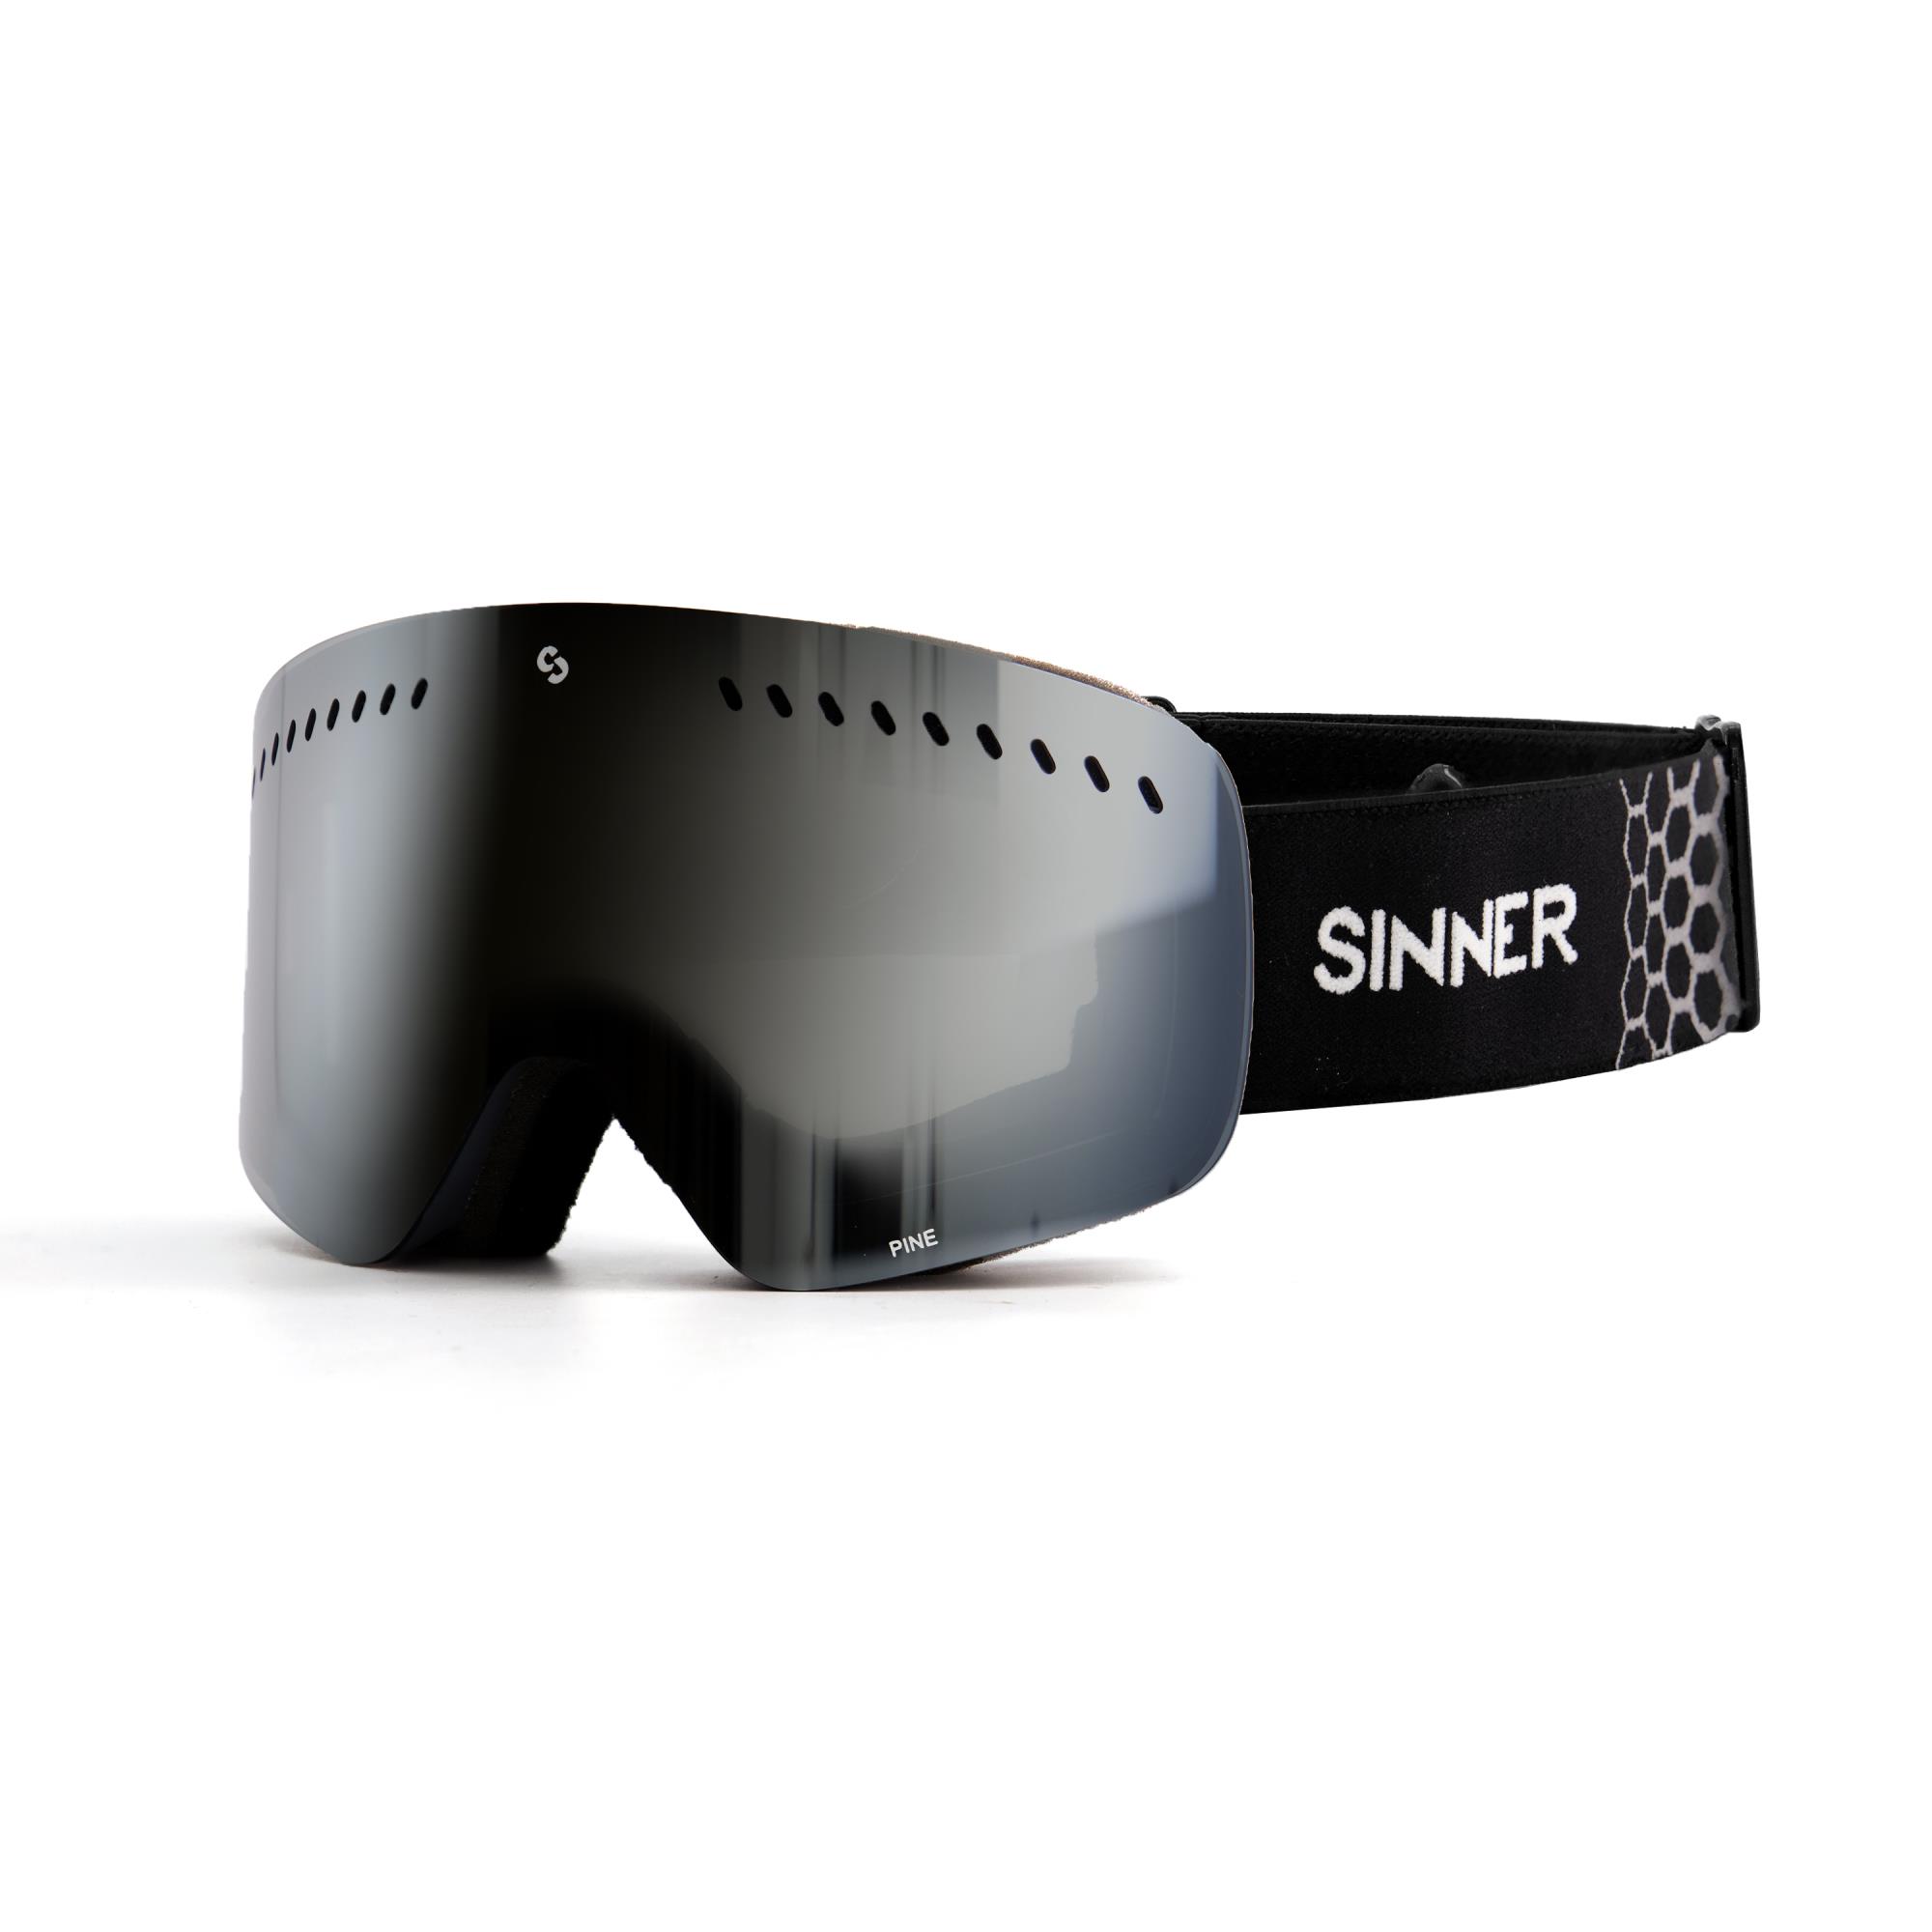 SINNER Pine Skibril - Grijs Frame + Smoke Spiegellens